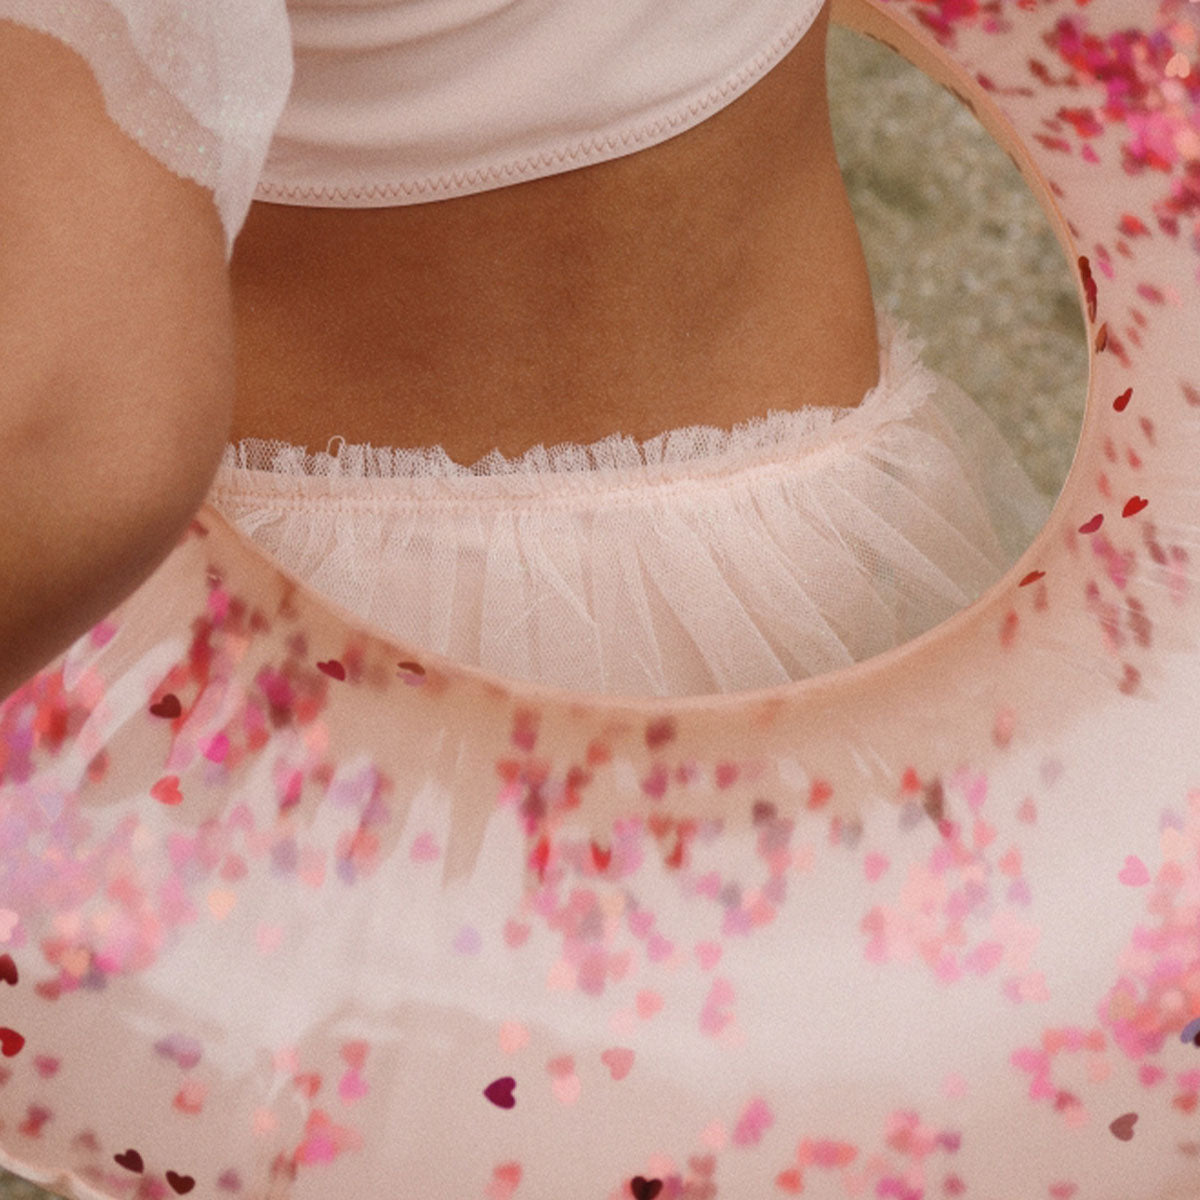 Deze geweldige strut bikini in cameo rose is net een ballerinapakje! De bikini heeft een mooie roze kleur een schattige print met een kers. Wat deze bikini zo speciaal maakt, is dat de mouwtjes gemaakt zijn van tule en dat het bikinibroekje afgewerkt is met een "rokje" van tule.